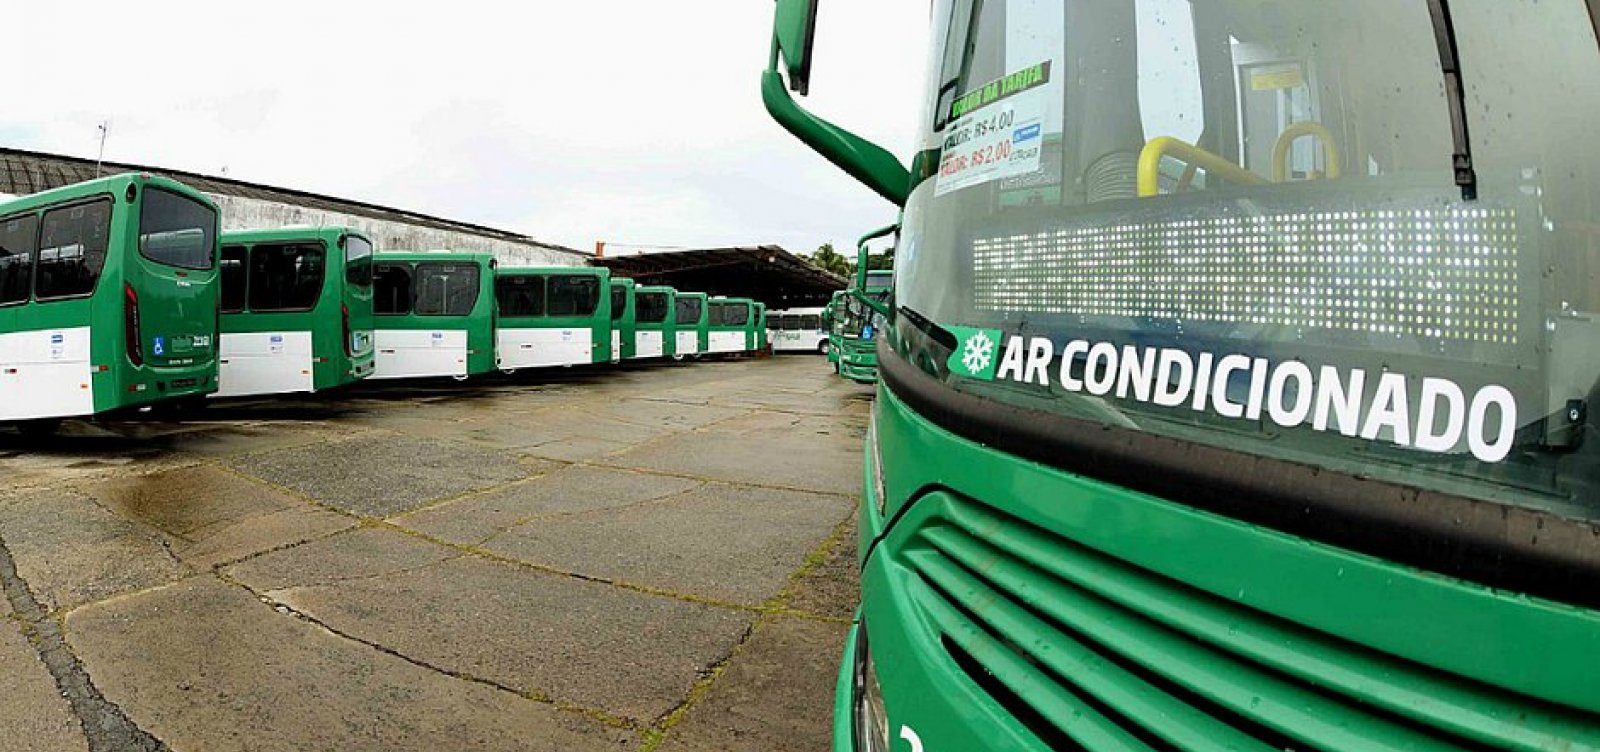 Novos ônibus com ar-condicionado rodam amanhã em Salvador, anuncia Neto